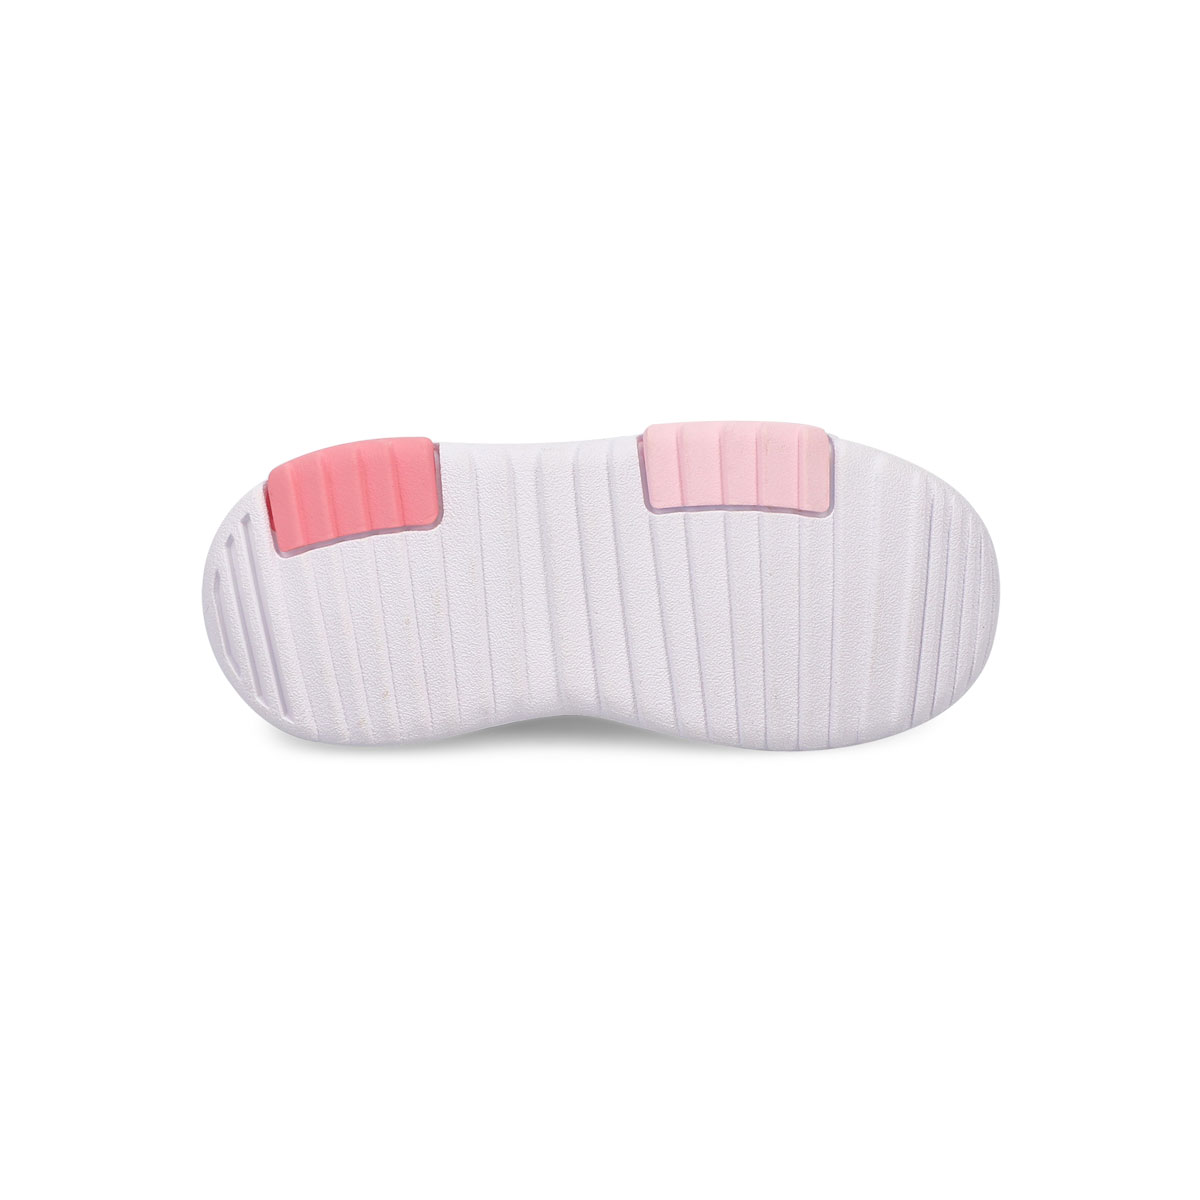 Infants' Racer TR 2.0 Sneaker - Pink/White